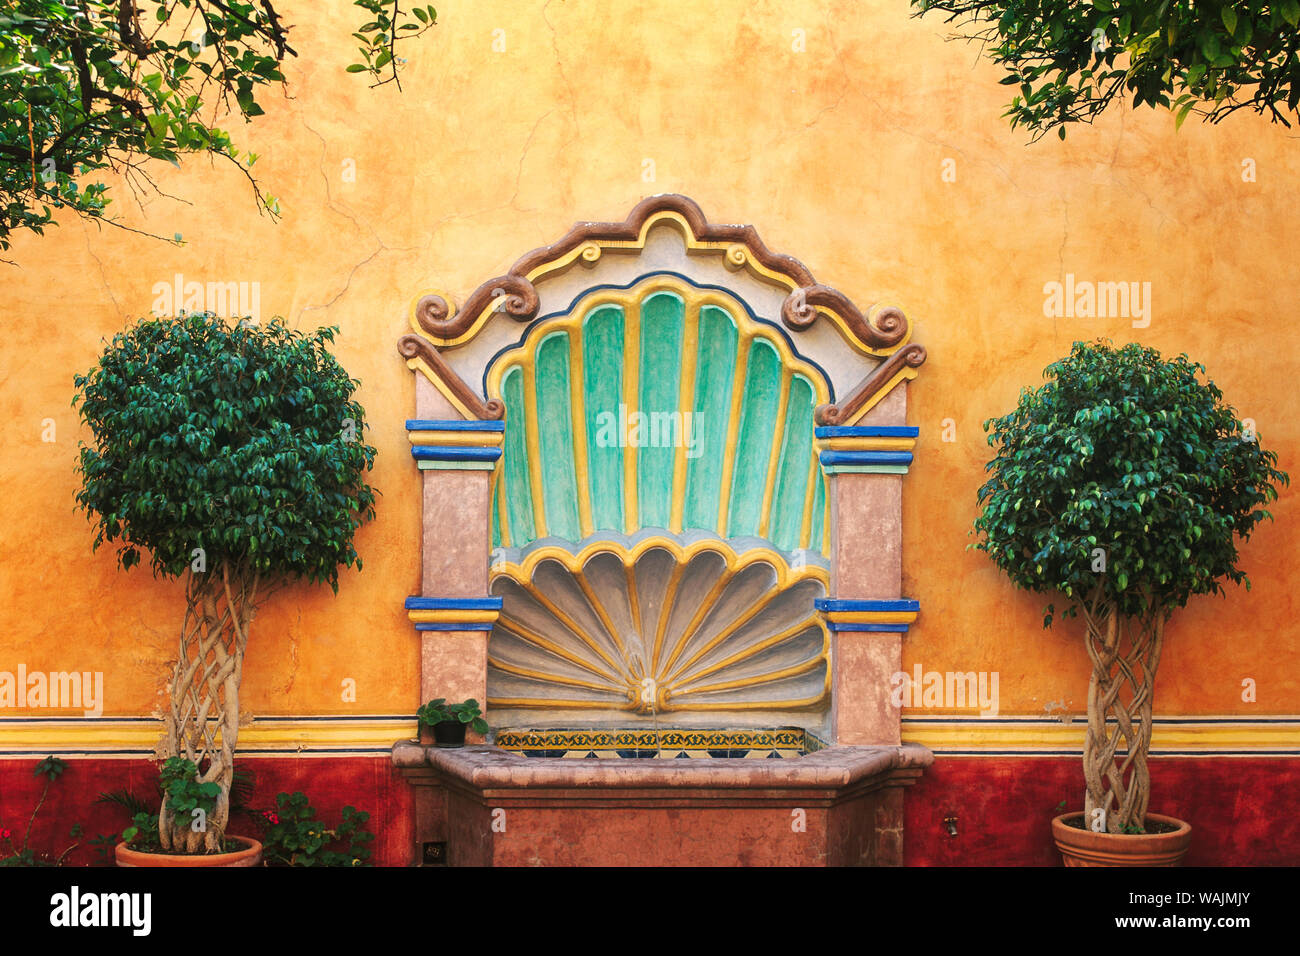 Le Mexique, Querétaro. Cour intérieure avec fontaine. En tant que crédit : Jim Nilsen / Jaynes Gallery / DanitaDelimont.com Banque D'Images